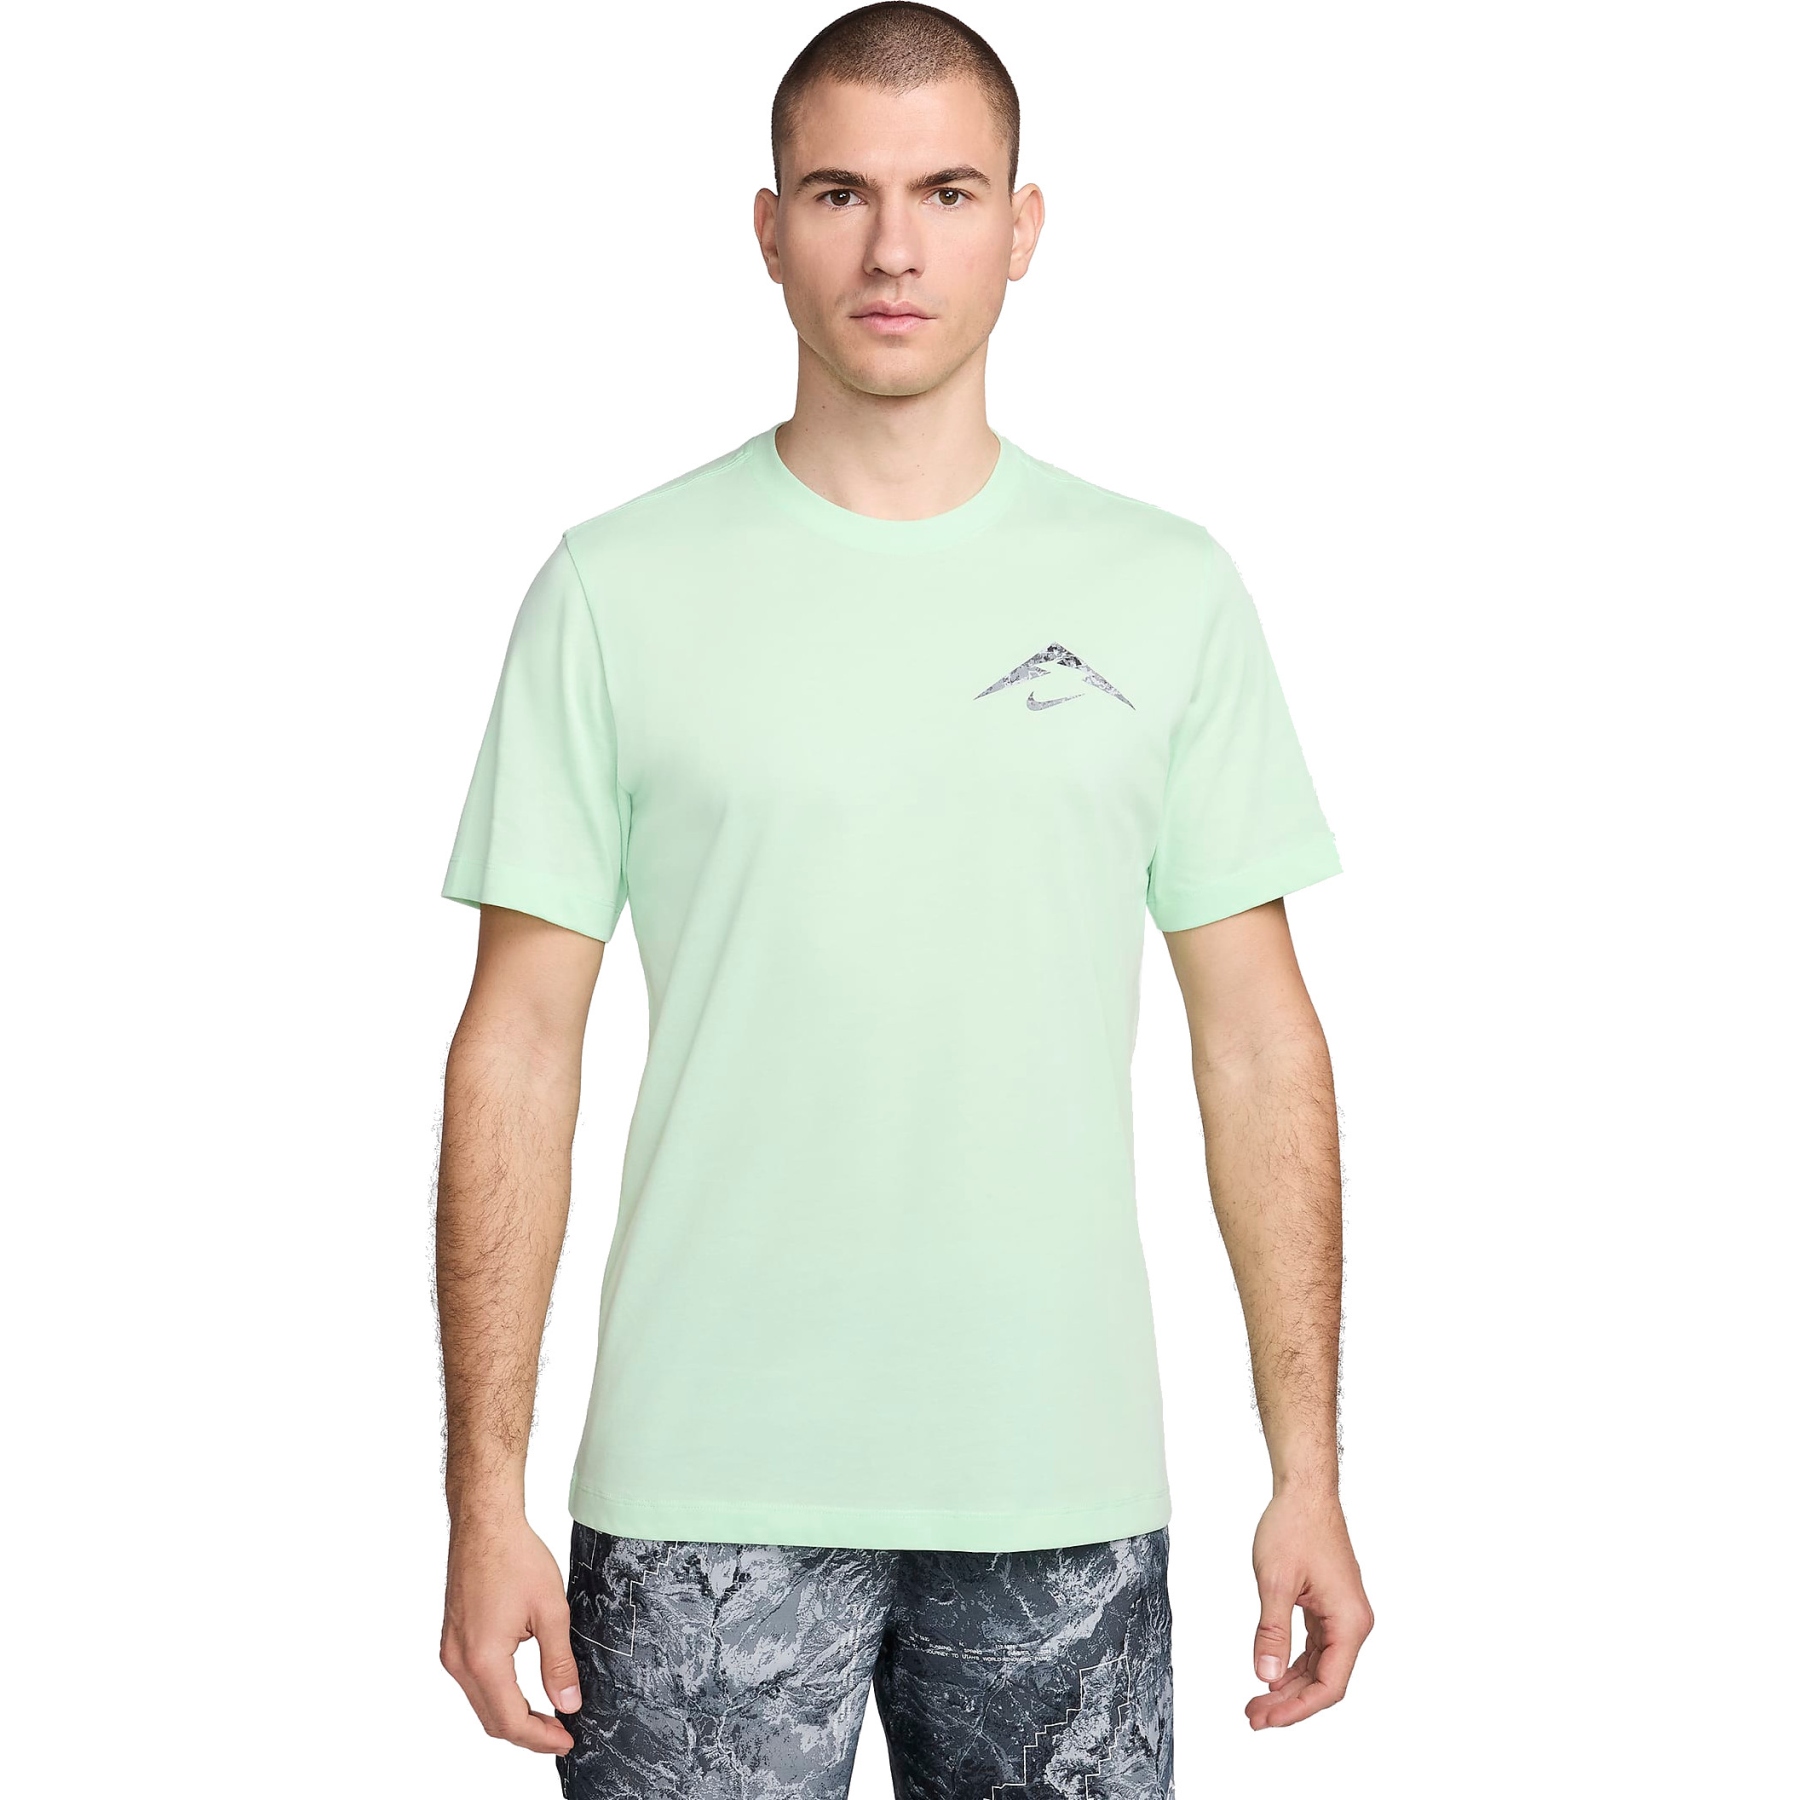 Produktbild von Nike Dri-FIT T-Shirt Herren - vapor green FV8386-376